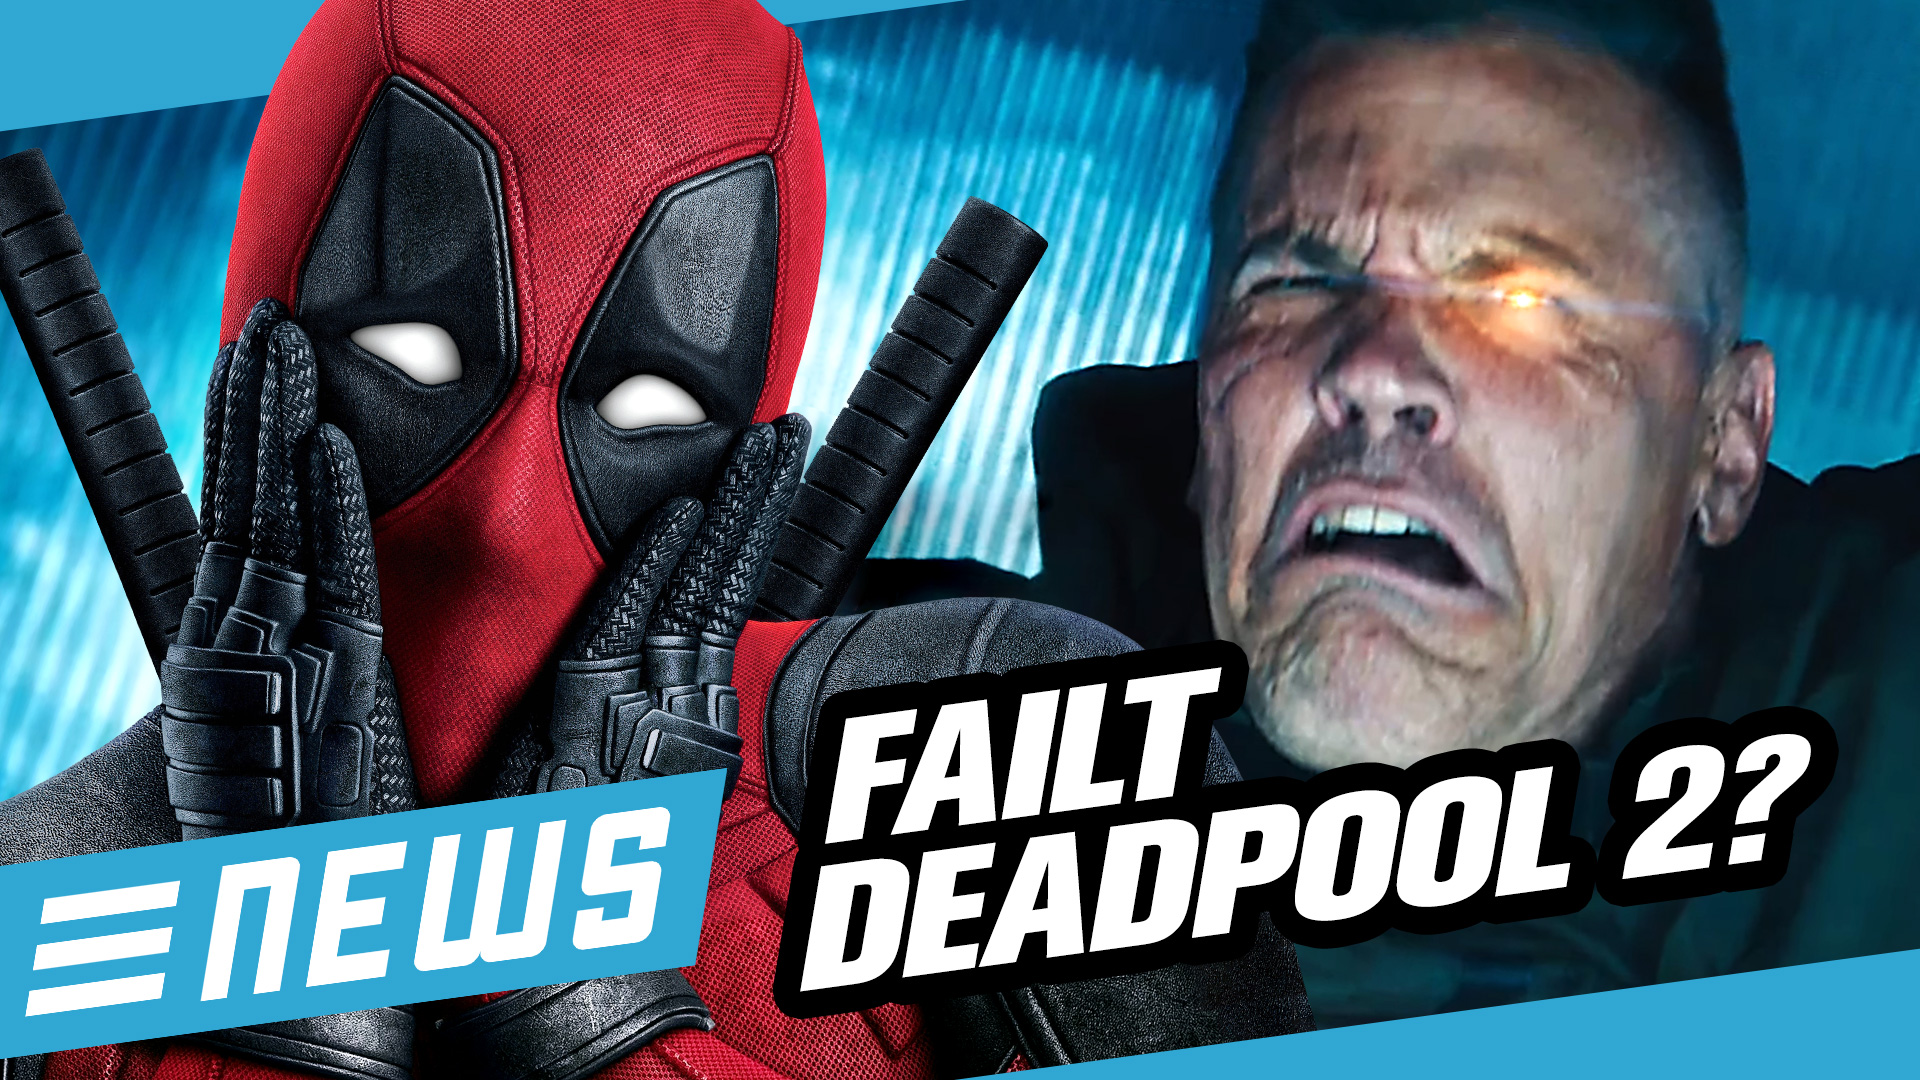 Nachdrehs:Deadpool 2-Testvorführungen fallen durch? - FLIPPS News vom 18.03.2018